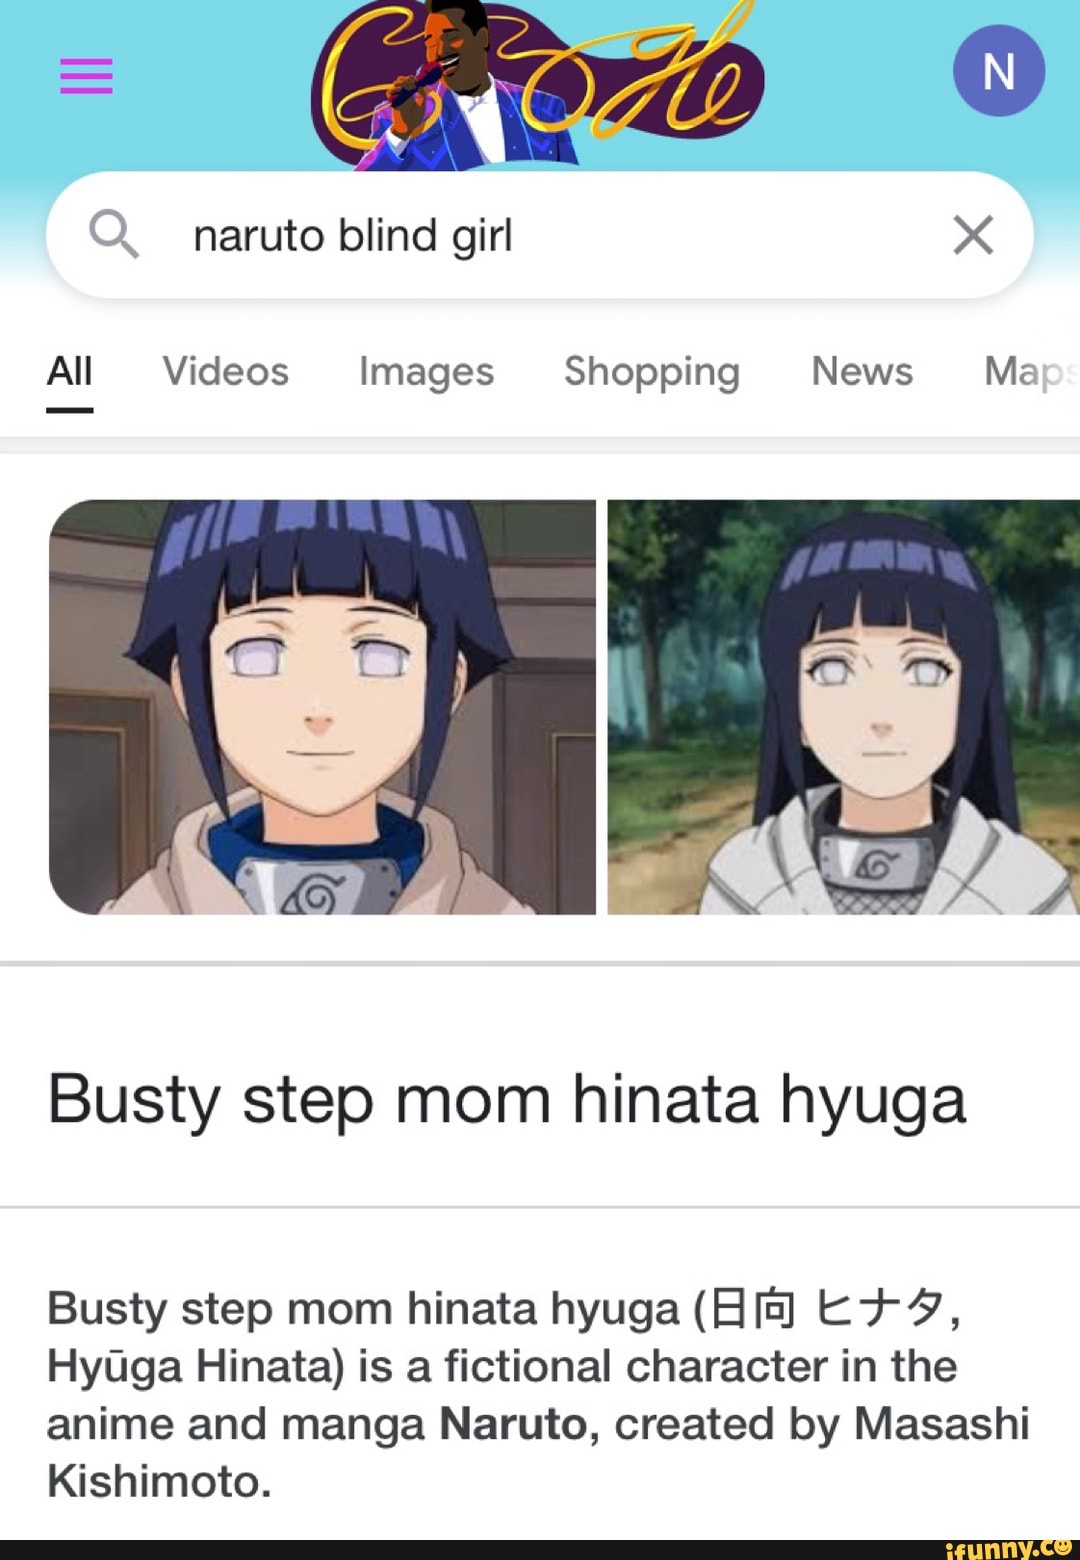 Hinata Hyuga - Wikipedia